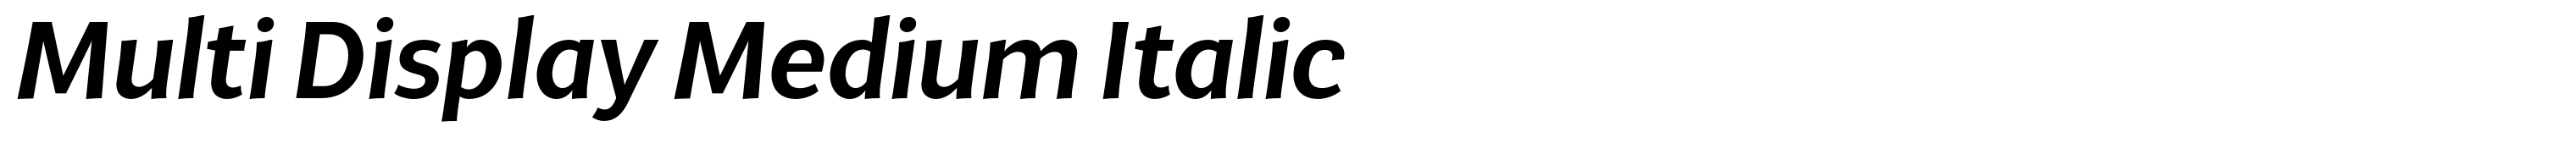 Multi Display Medium Italic